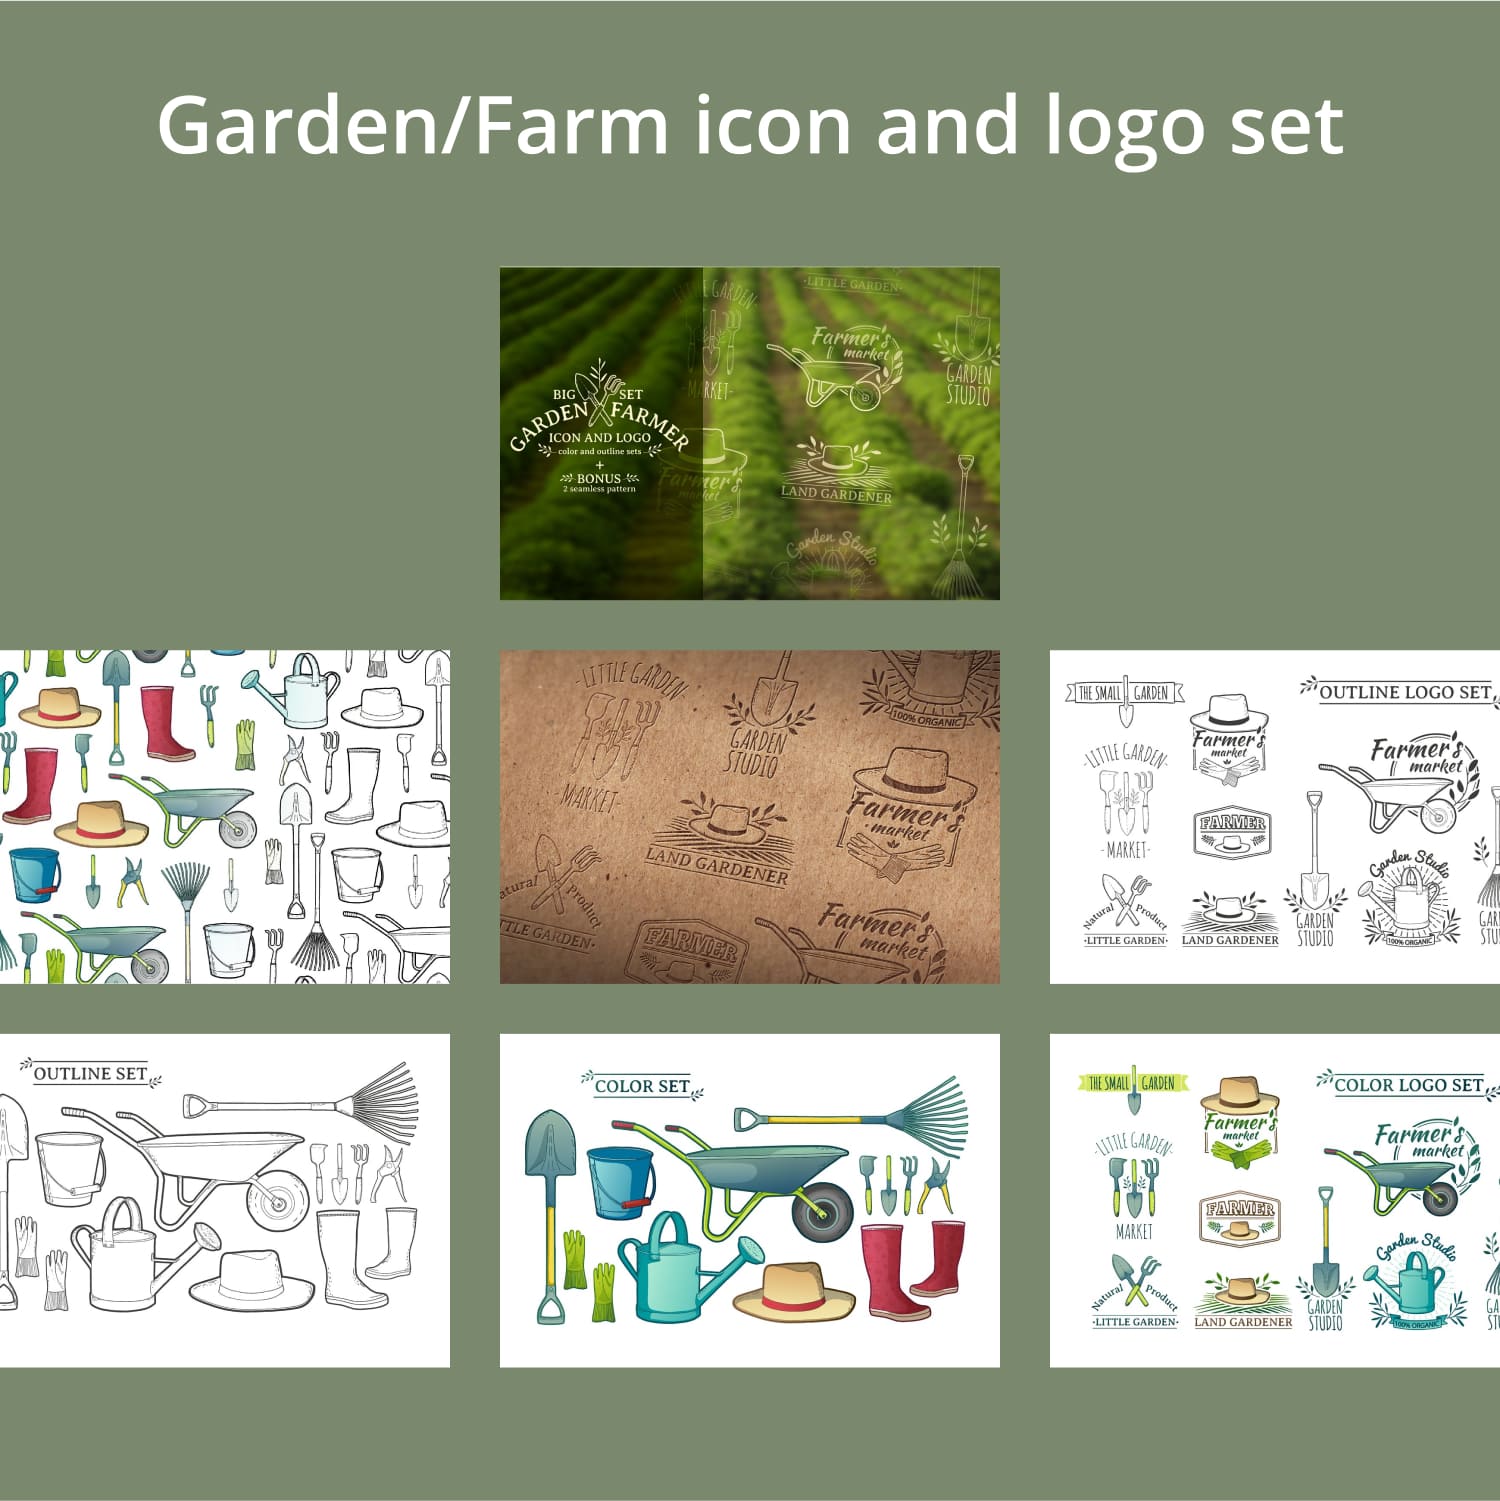 Garden/Farm icon and logo set.